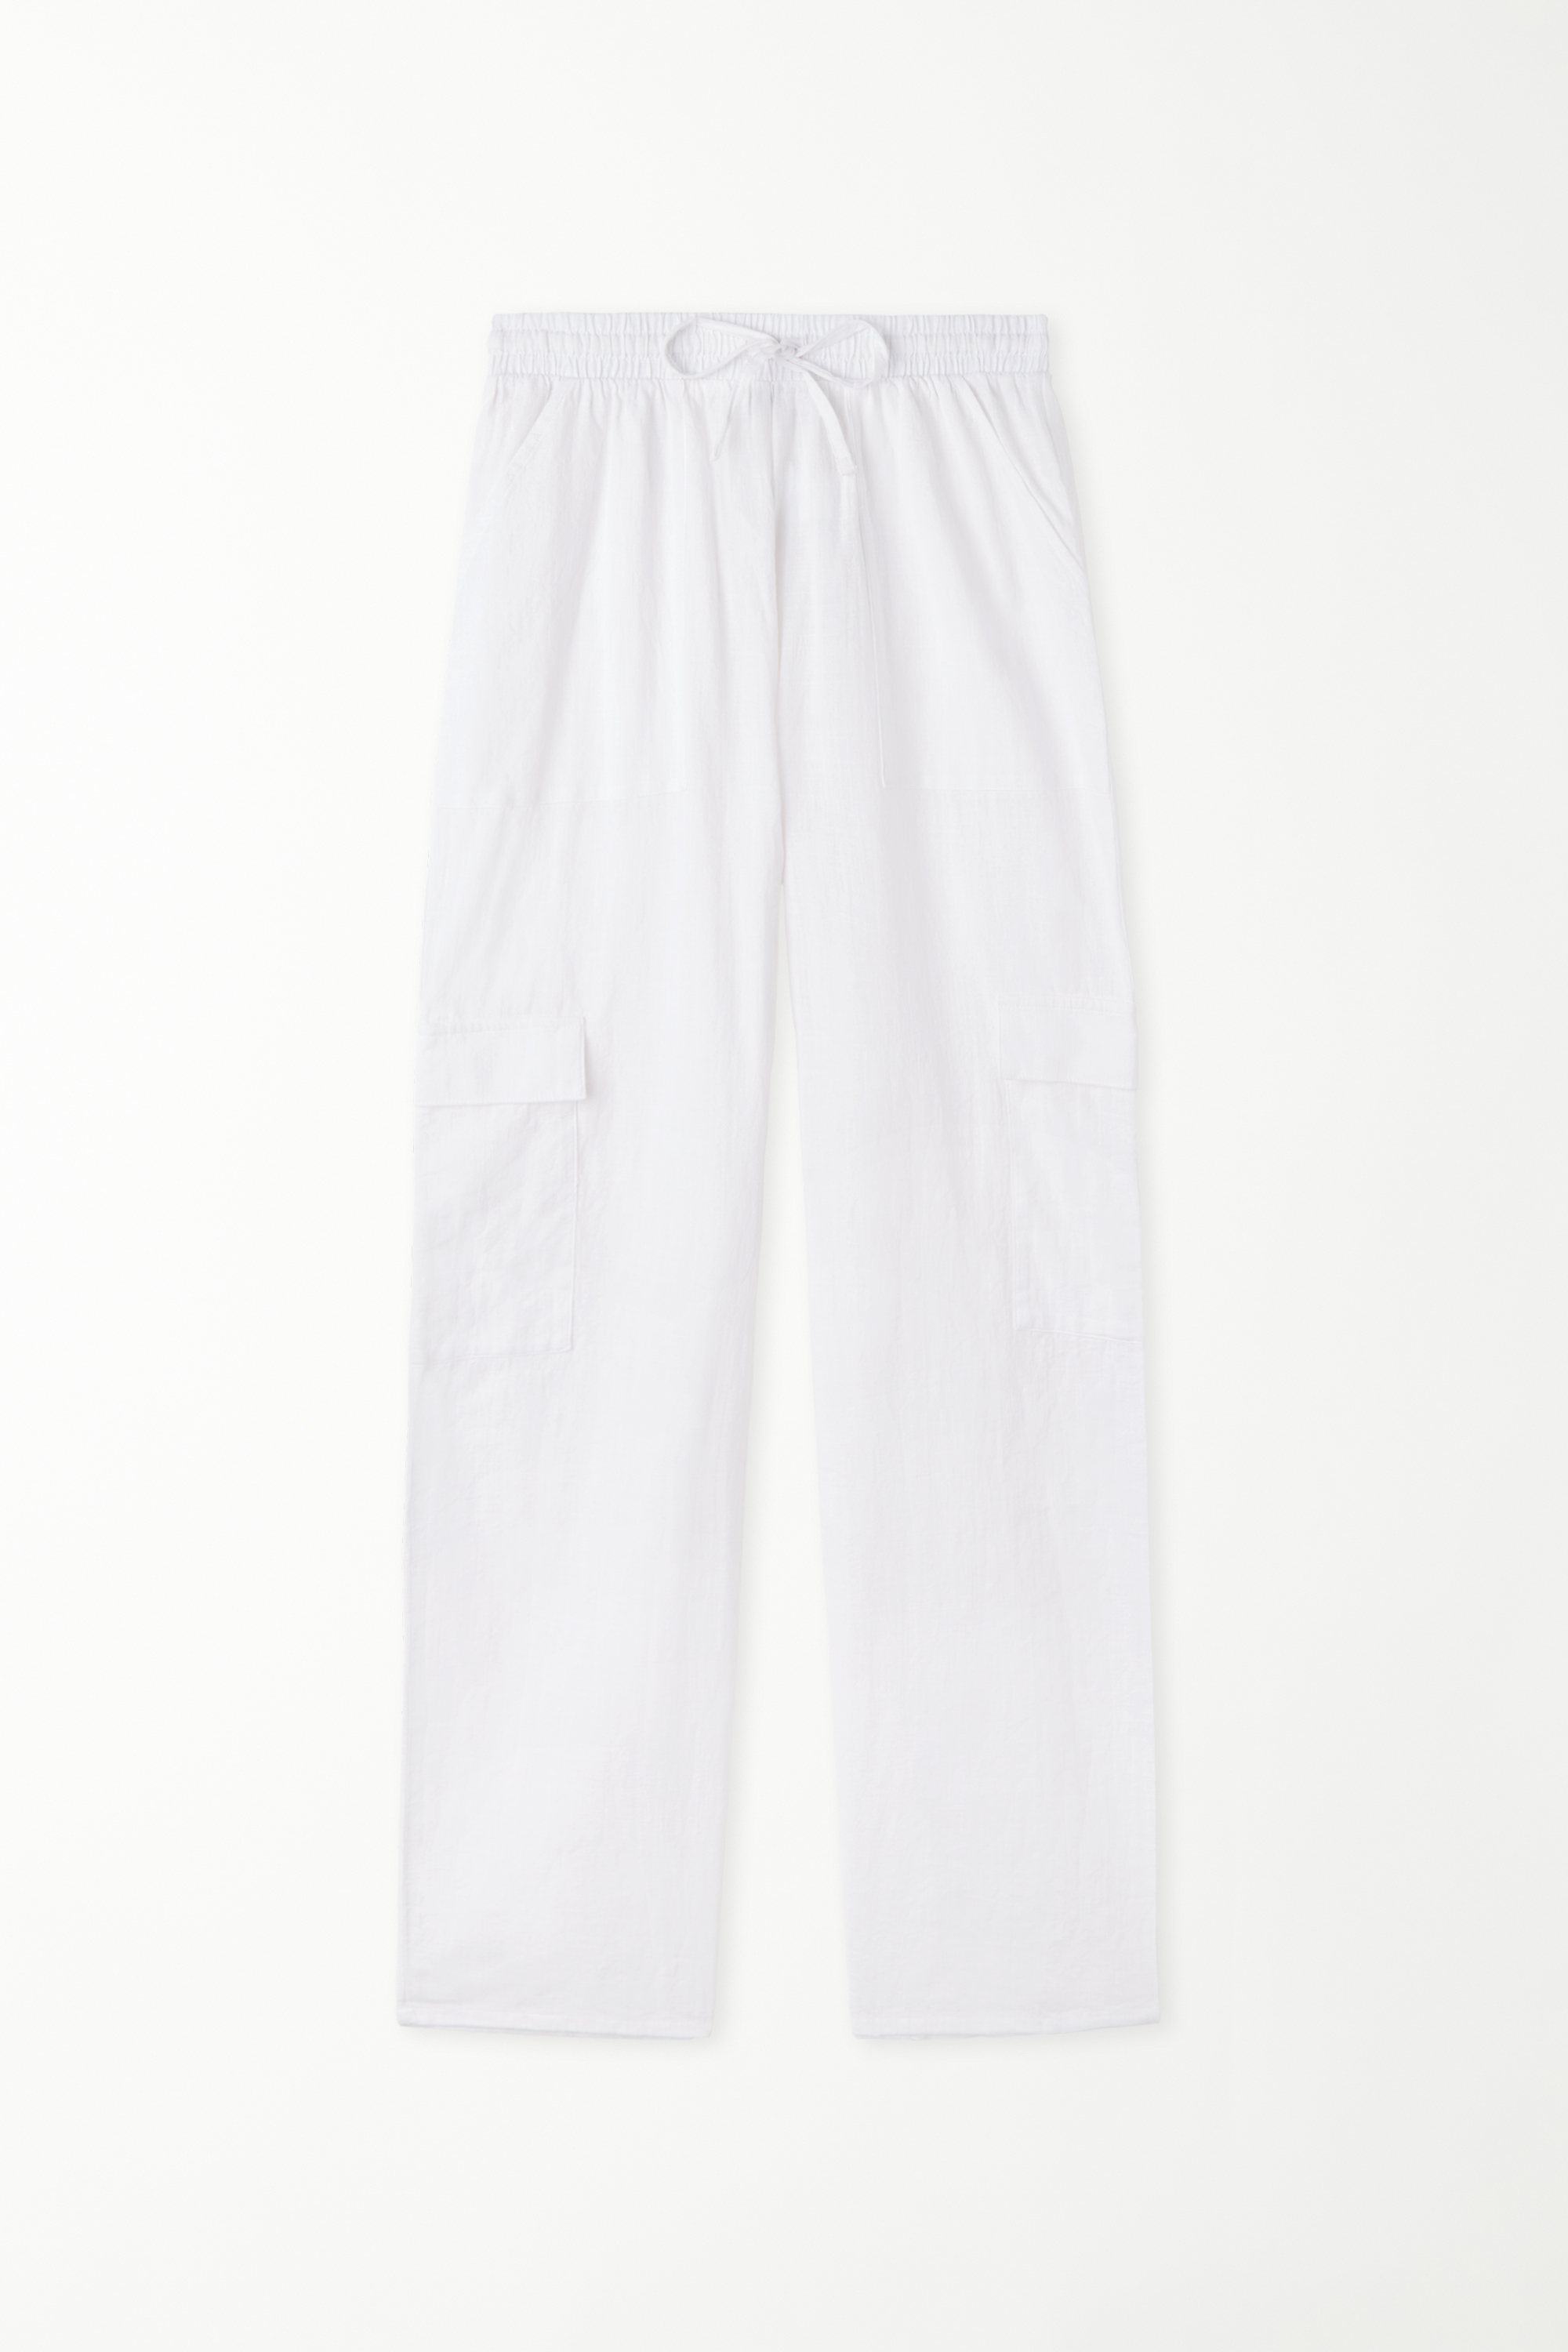 Full Length Cargo Pocket Pants in 100% Super Light Cotton